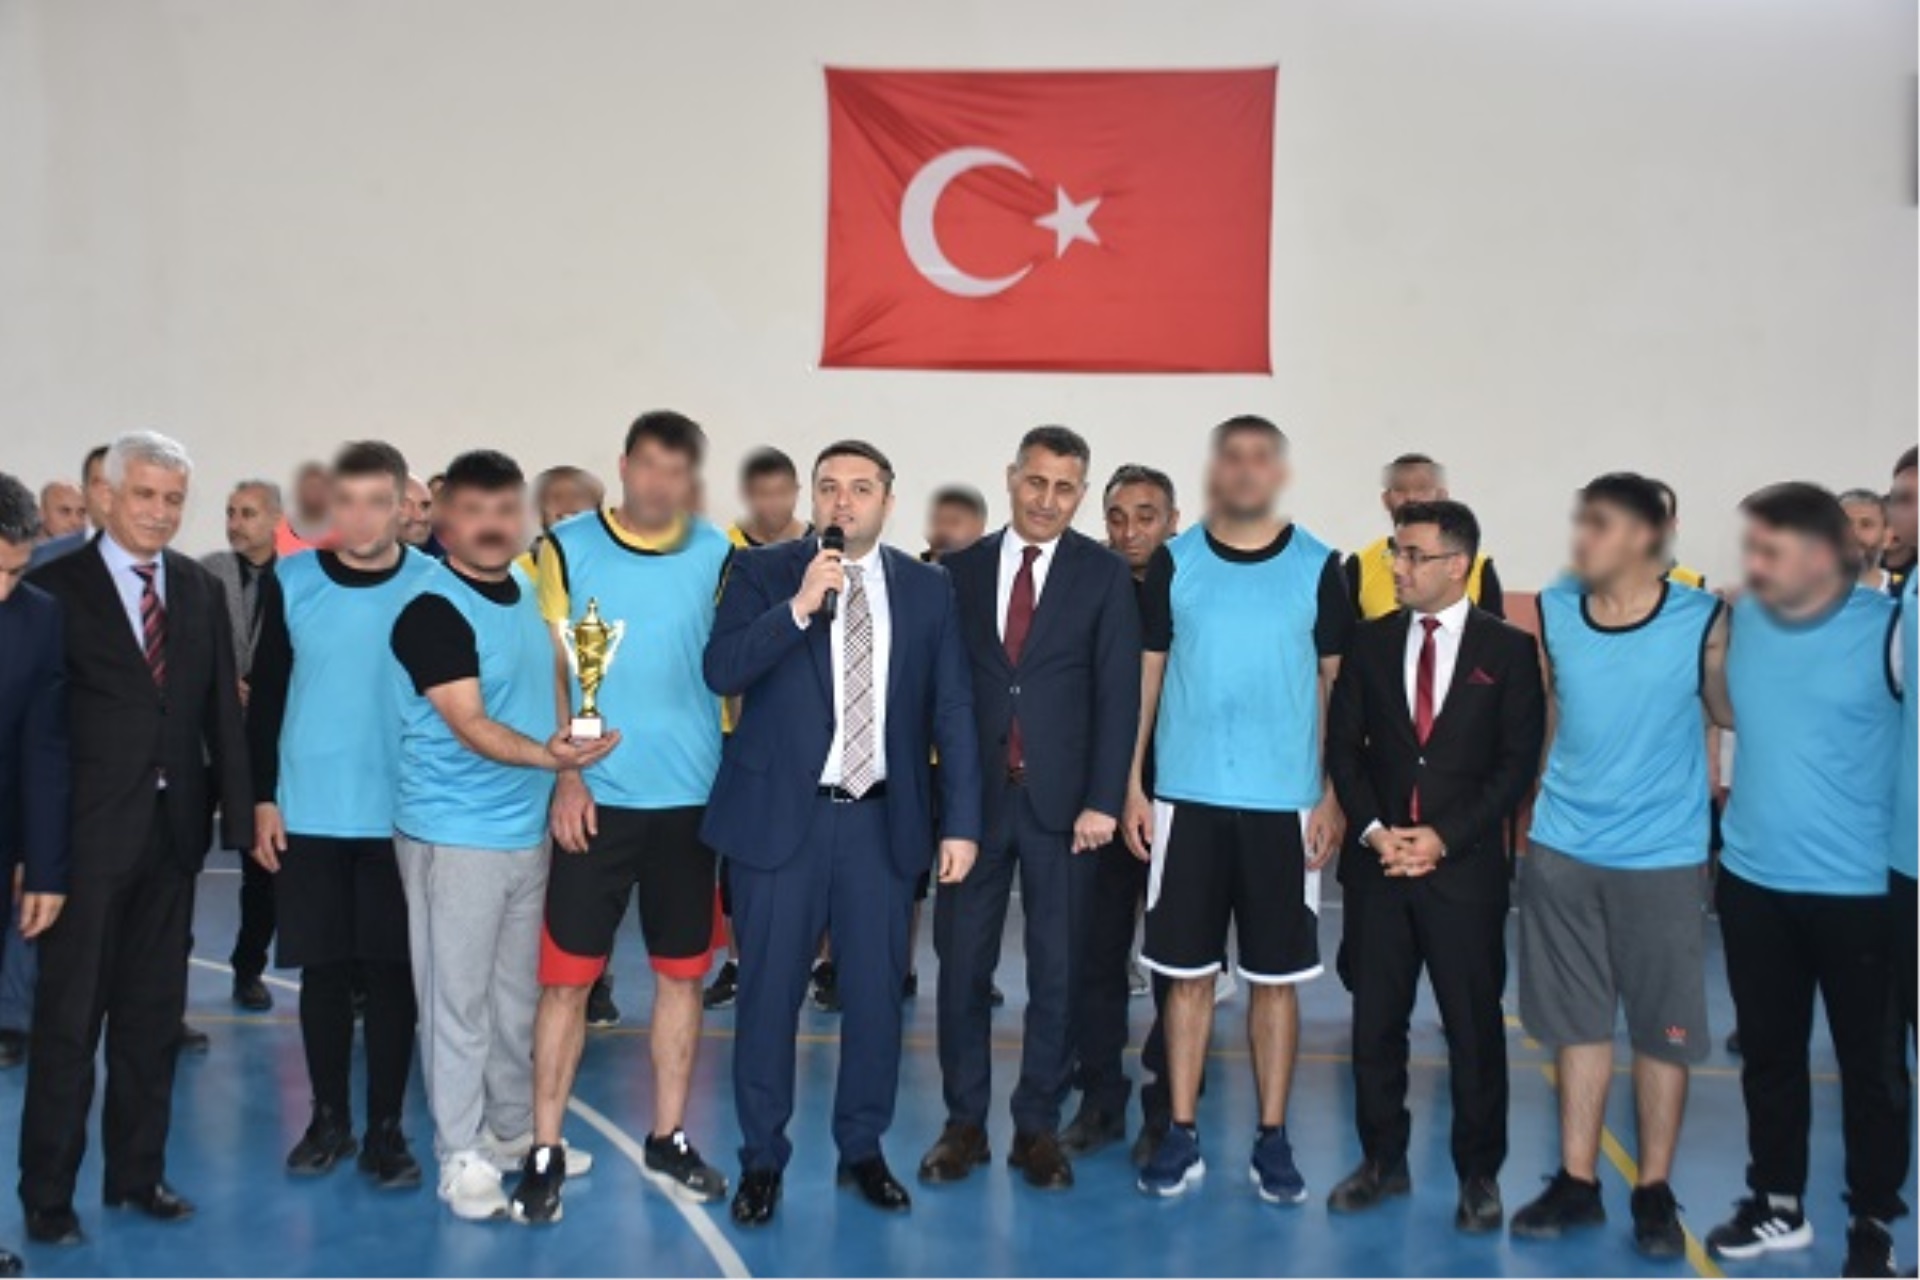 Voleybol Turnuvasında başarı sağlayan takımlara Niğde Adliyesi Başsavcısı Ufuk Mustafa SÜREN ve Cezaevi savcısı Ömer EKMEN tarafından kupaları verildi